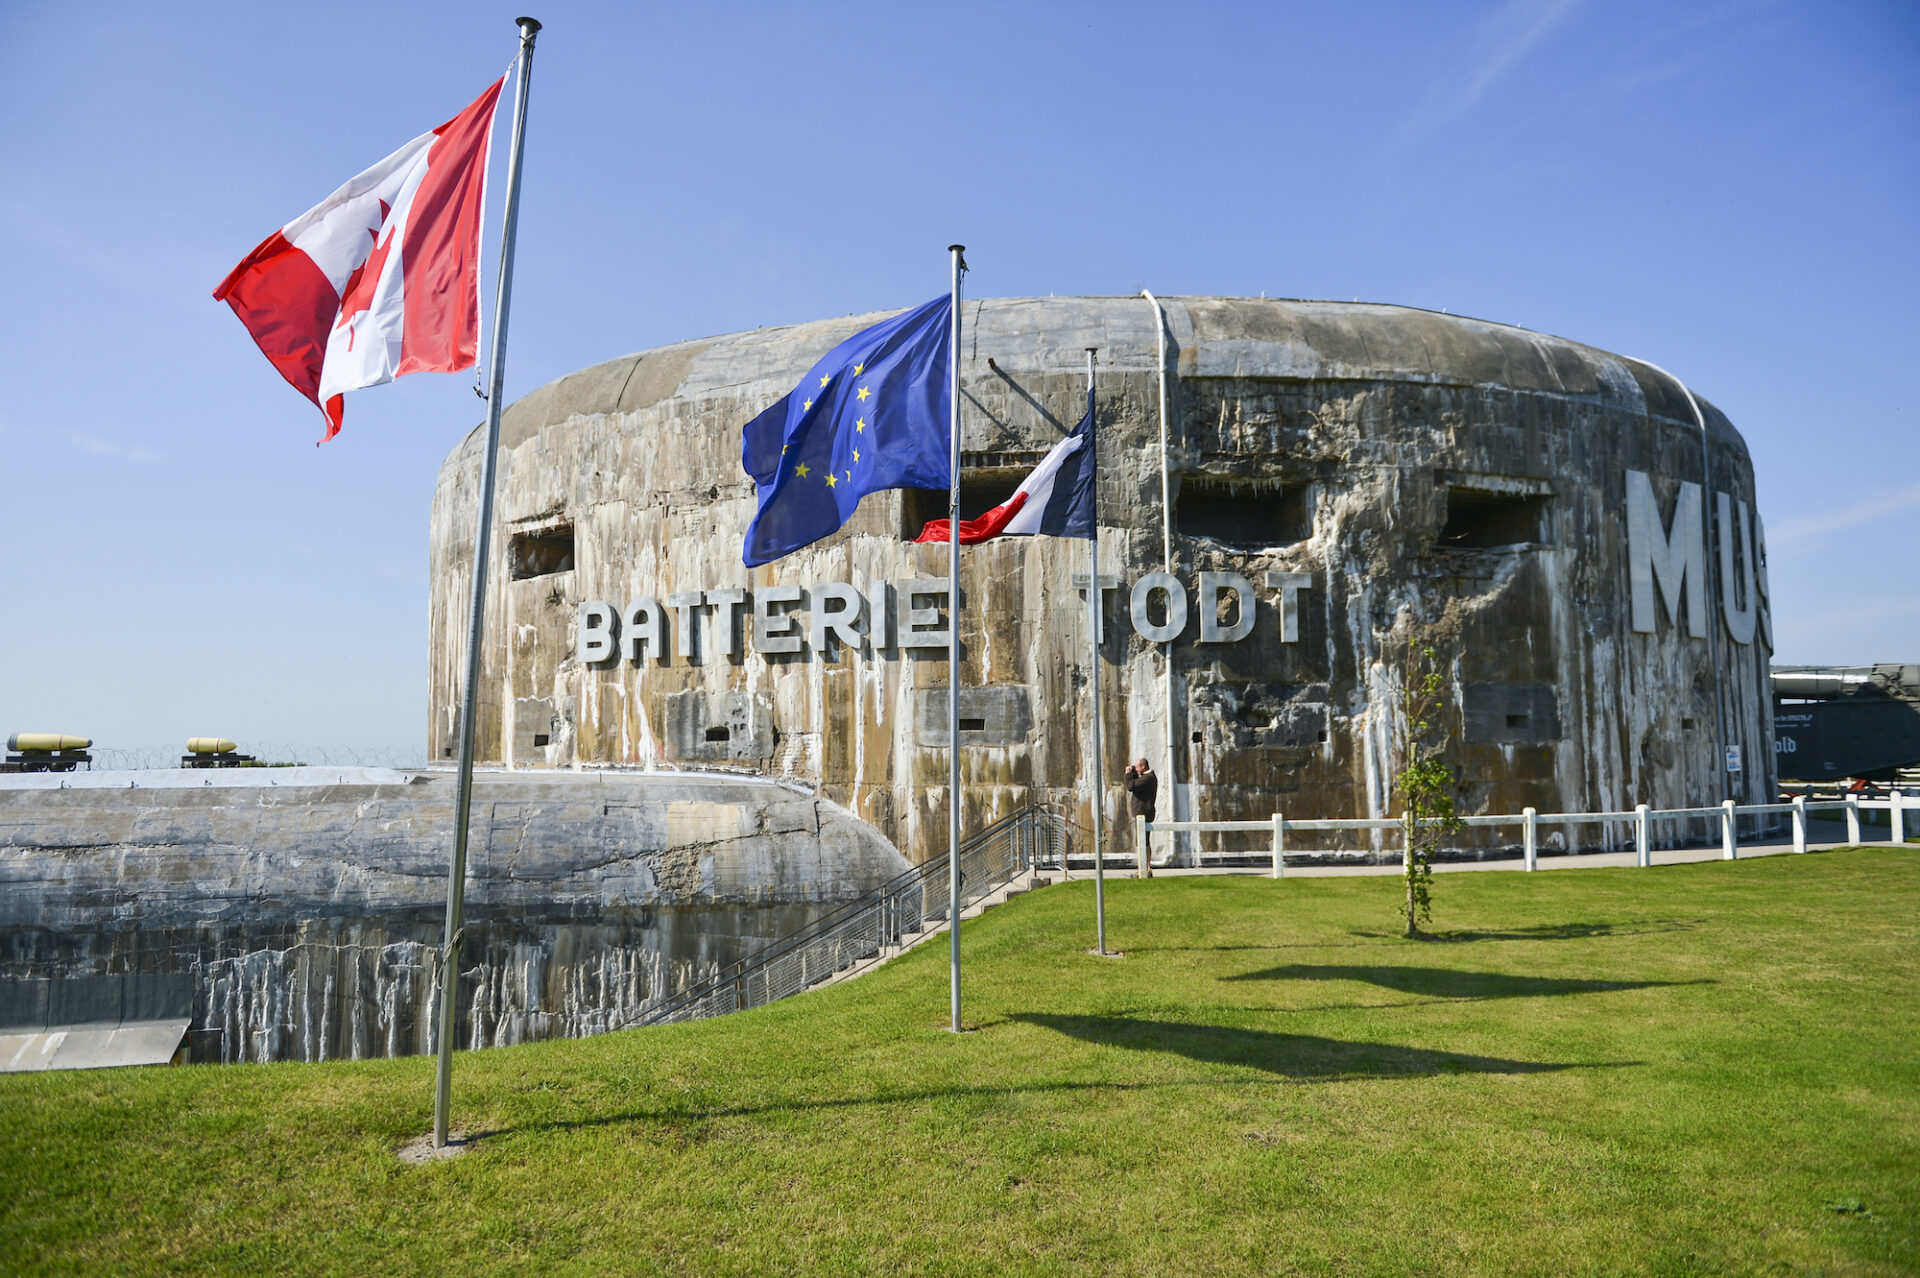 Batterie Todt in Pas-de-Calais